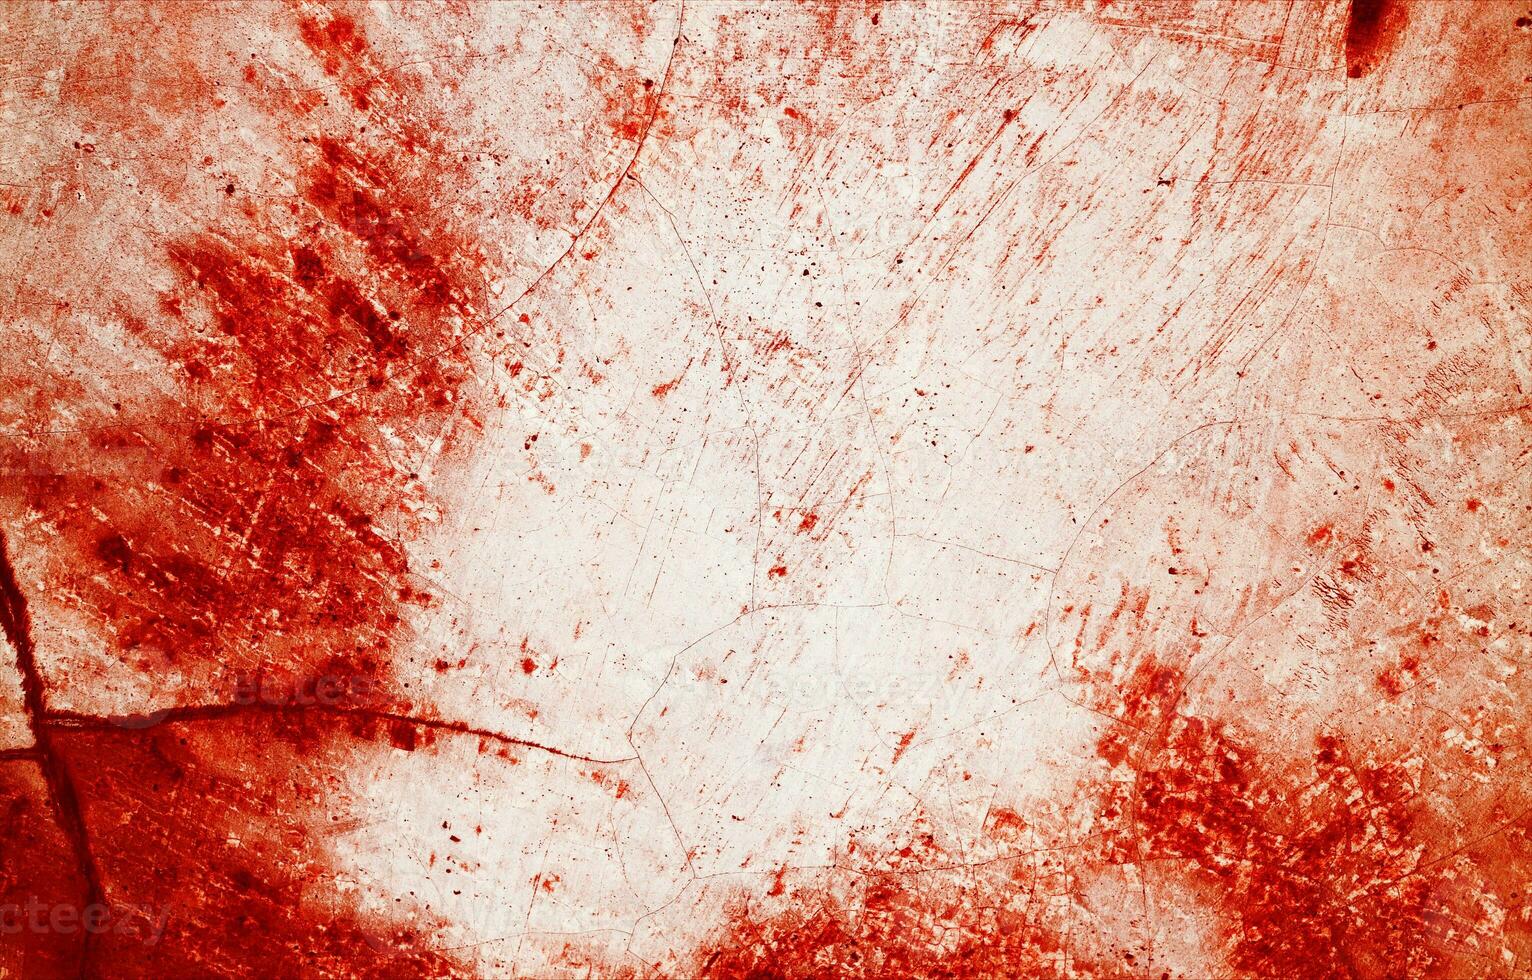 respingos do vermelho pintura assemelhar-se fresco sangue, seus irregular arestas contribuindo para uma sentido do mal-estar. a manchas, reminiscente do dia das Bruxas horrores. foto